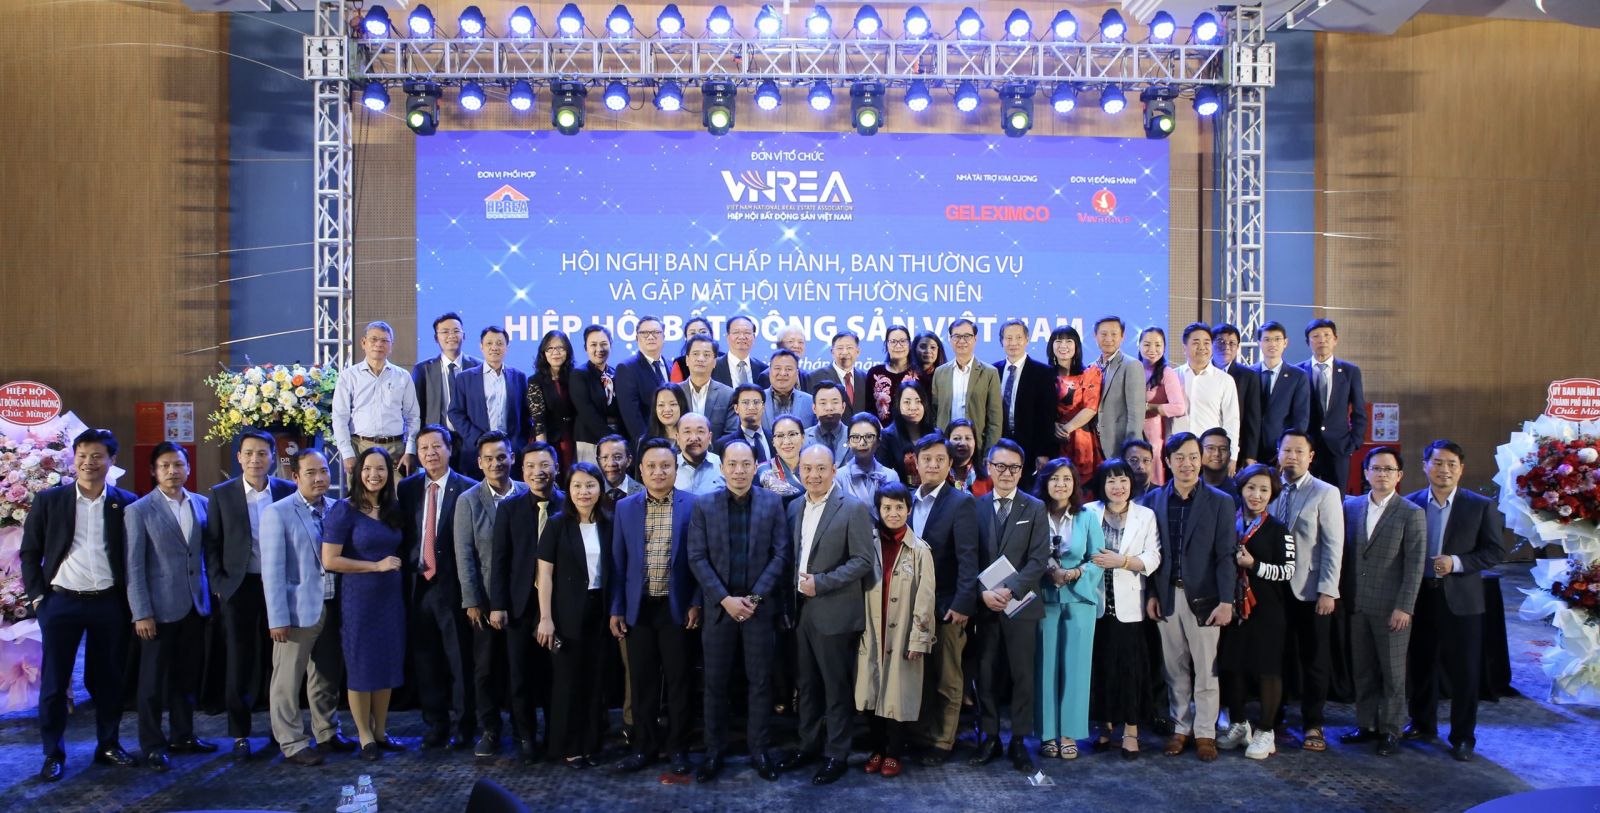 Hội nghị Ban Chấp hành, Ban Thường vụ và gặp mặt Hội viên thường niên 2023 Hiệp hội Bất động sản Việt Nam